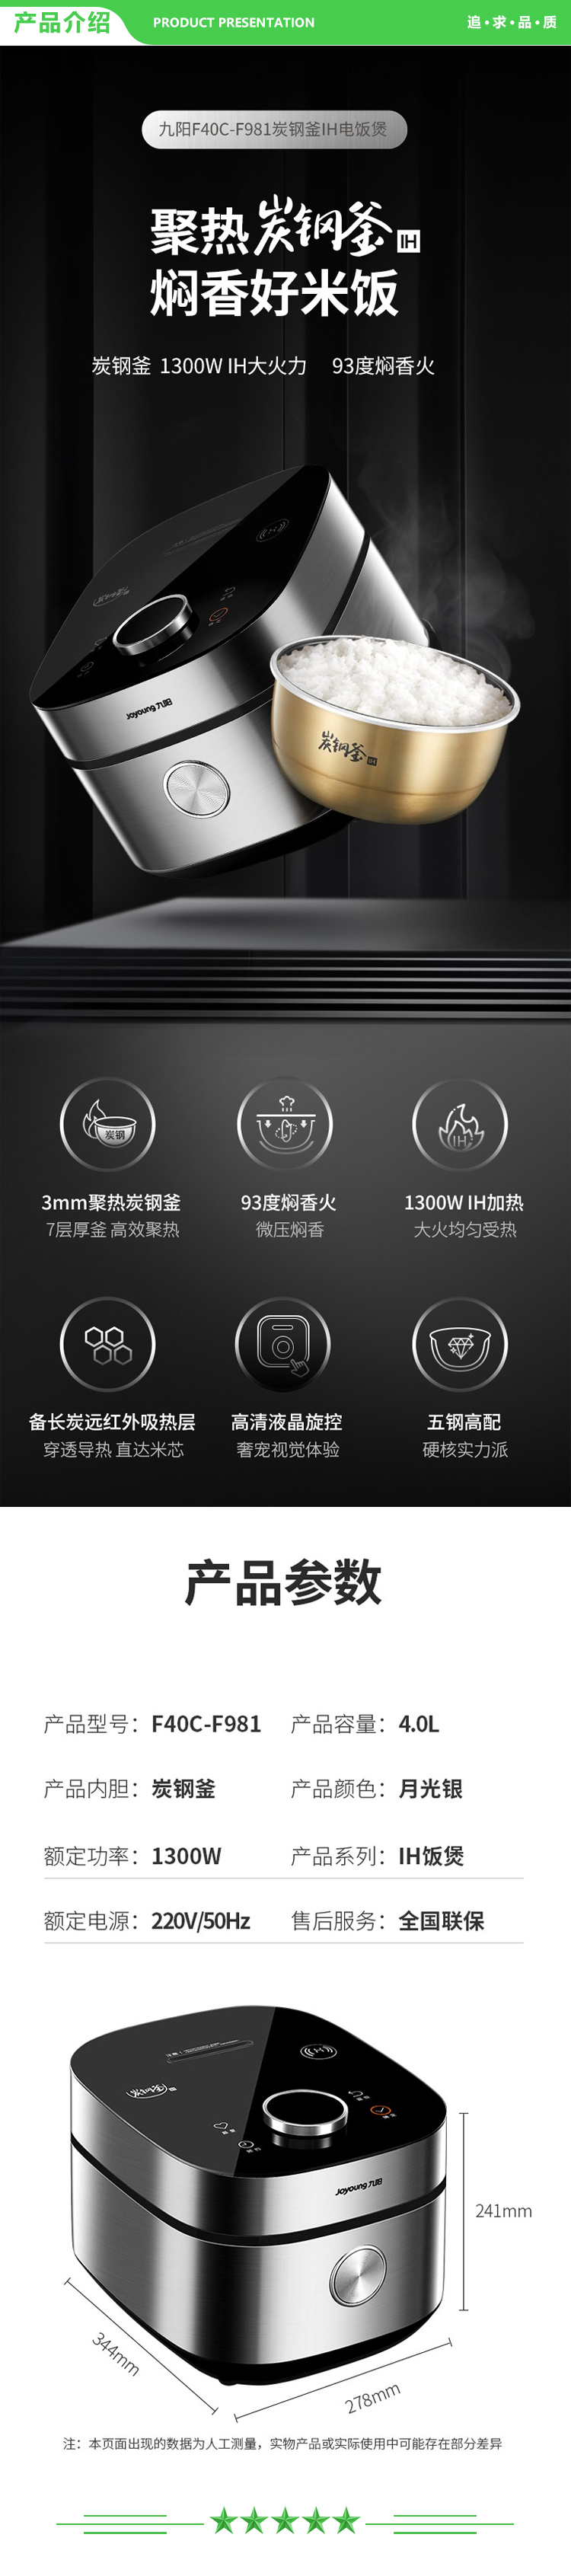 九阳 Joyoung F40C-F981 电饭煲 大容量米饭锅 IH电磁加热电饭锅 2.jpg